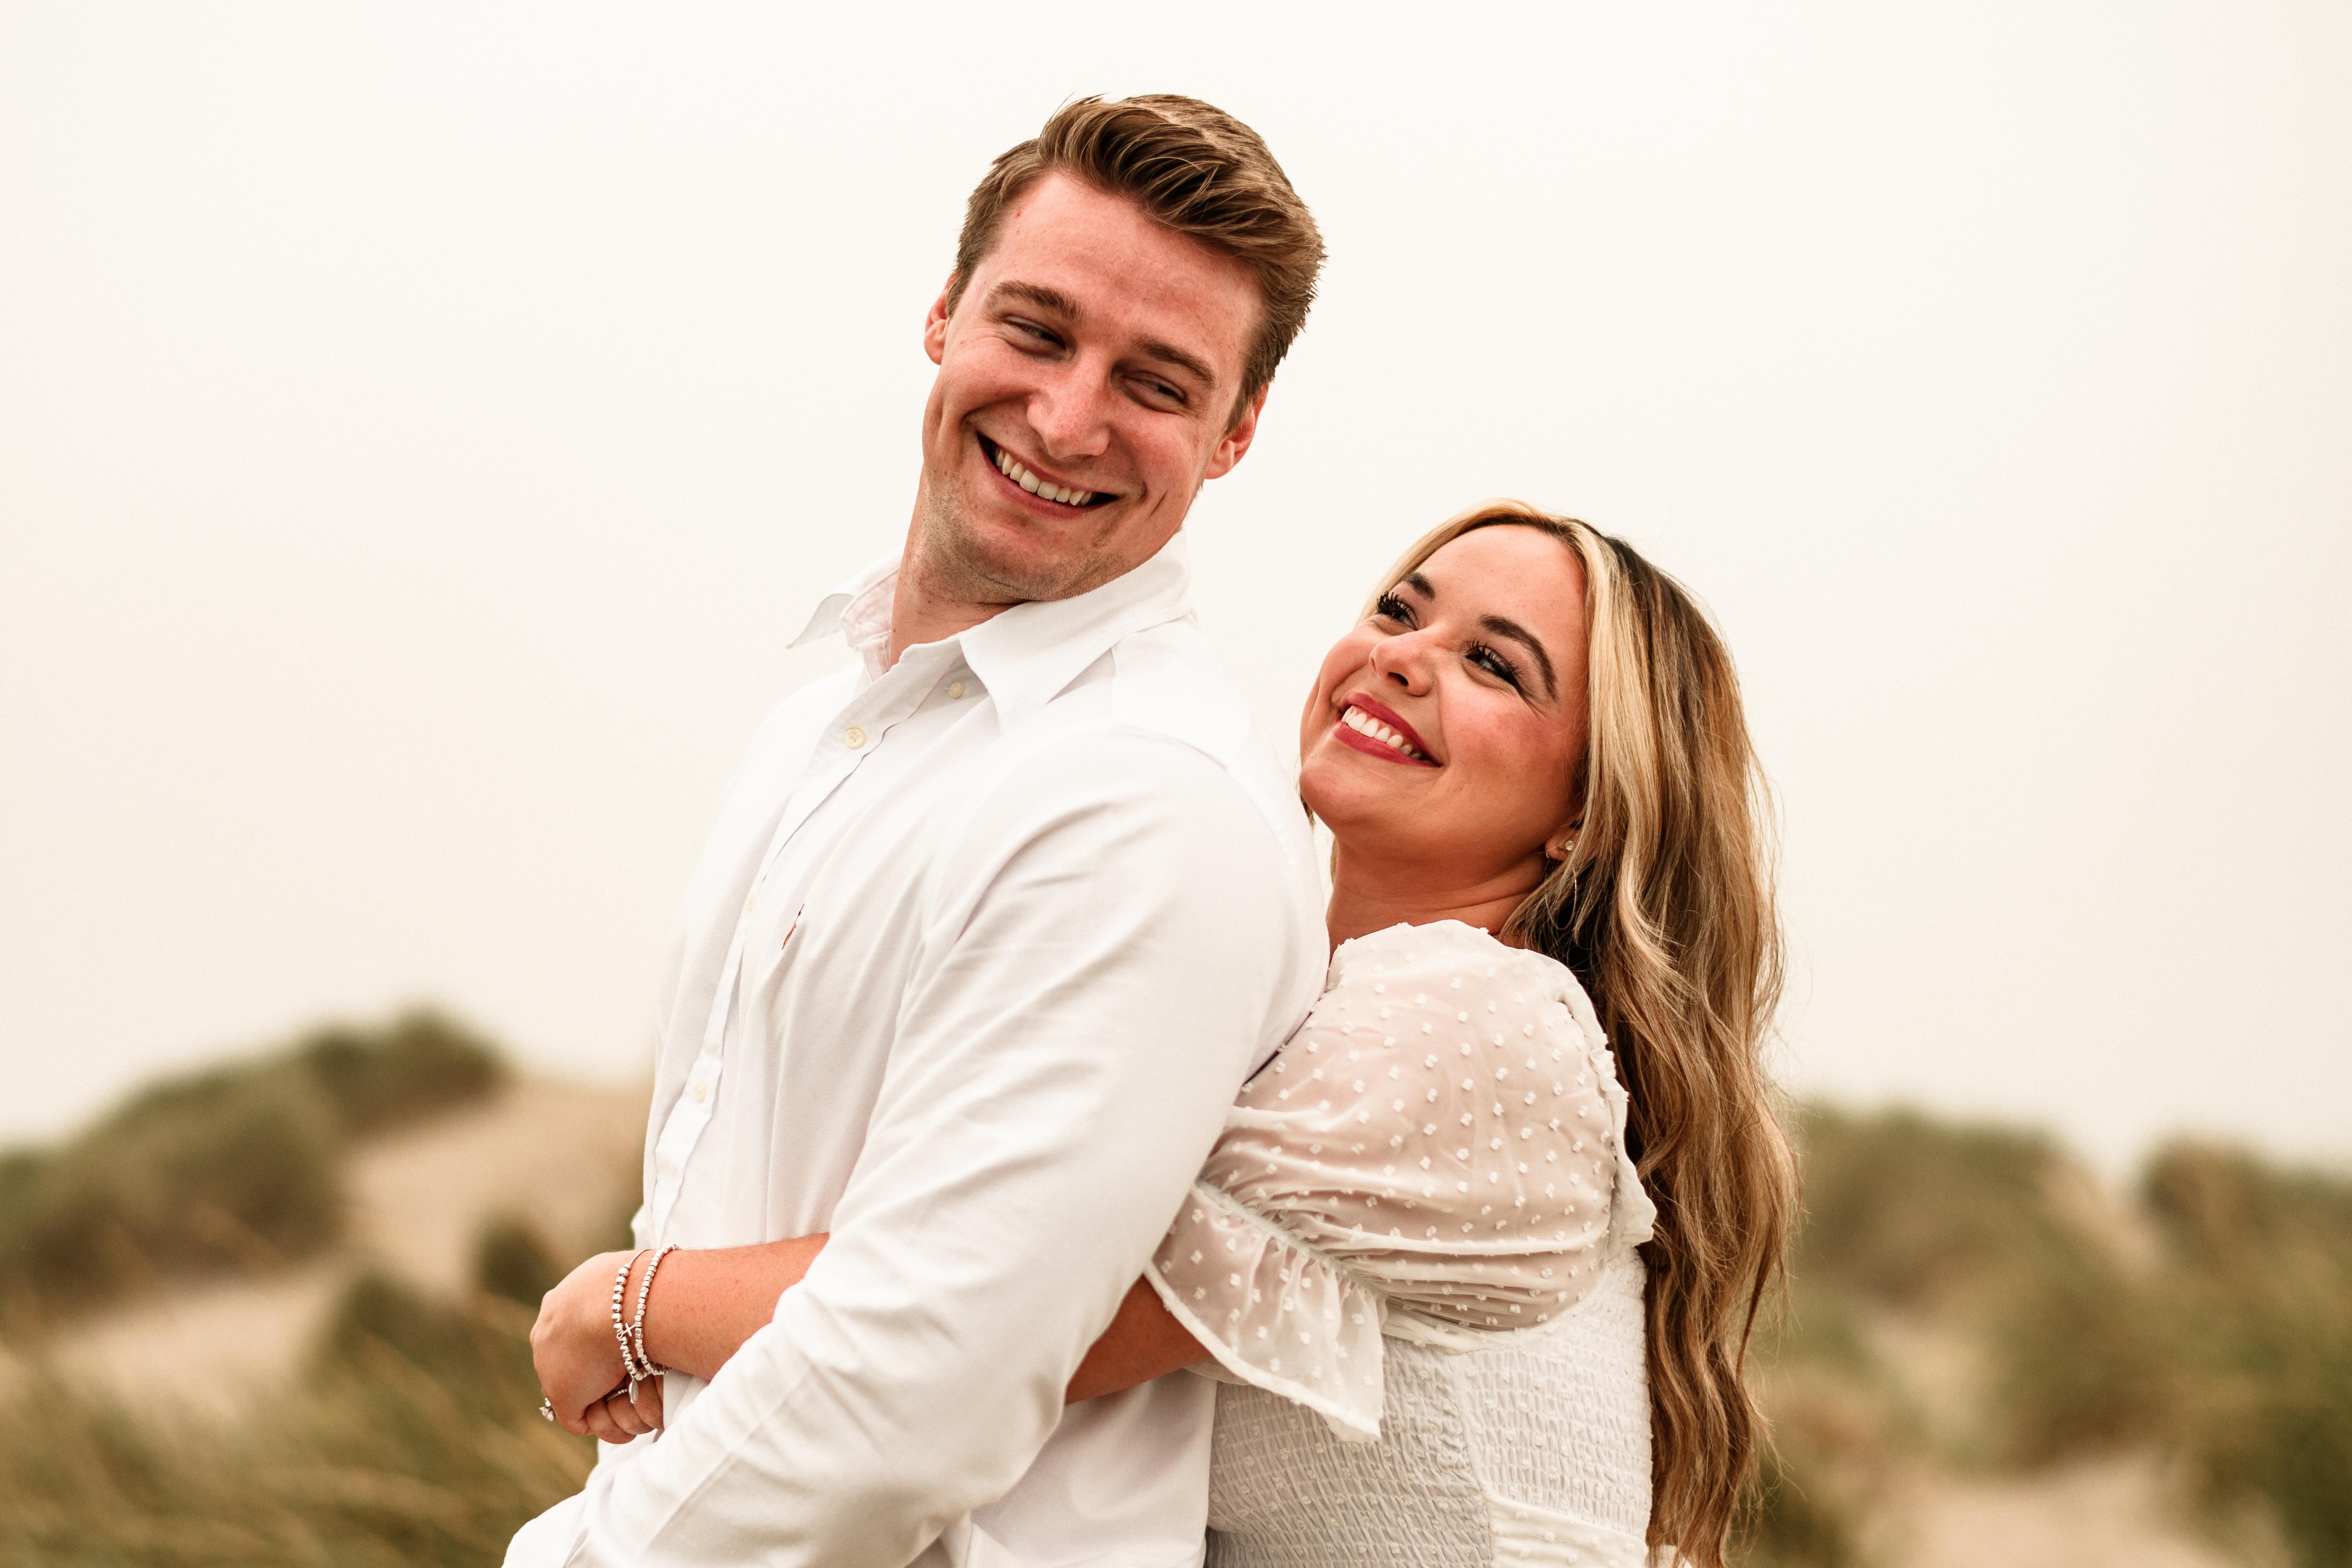 The Wedding Website of Katie Adams and Max Fortnum